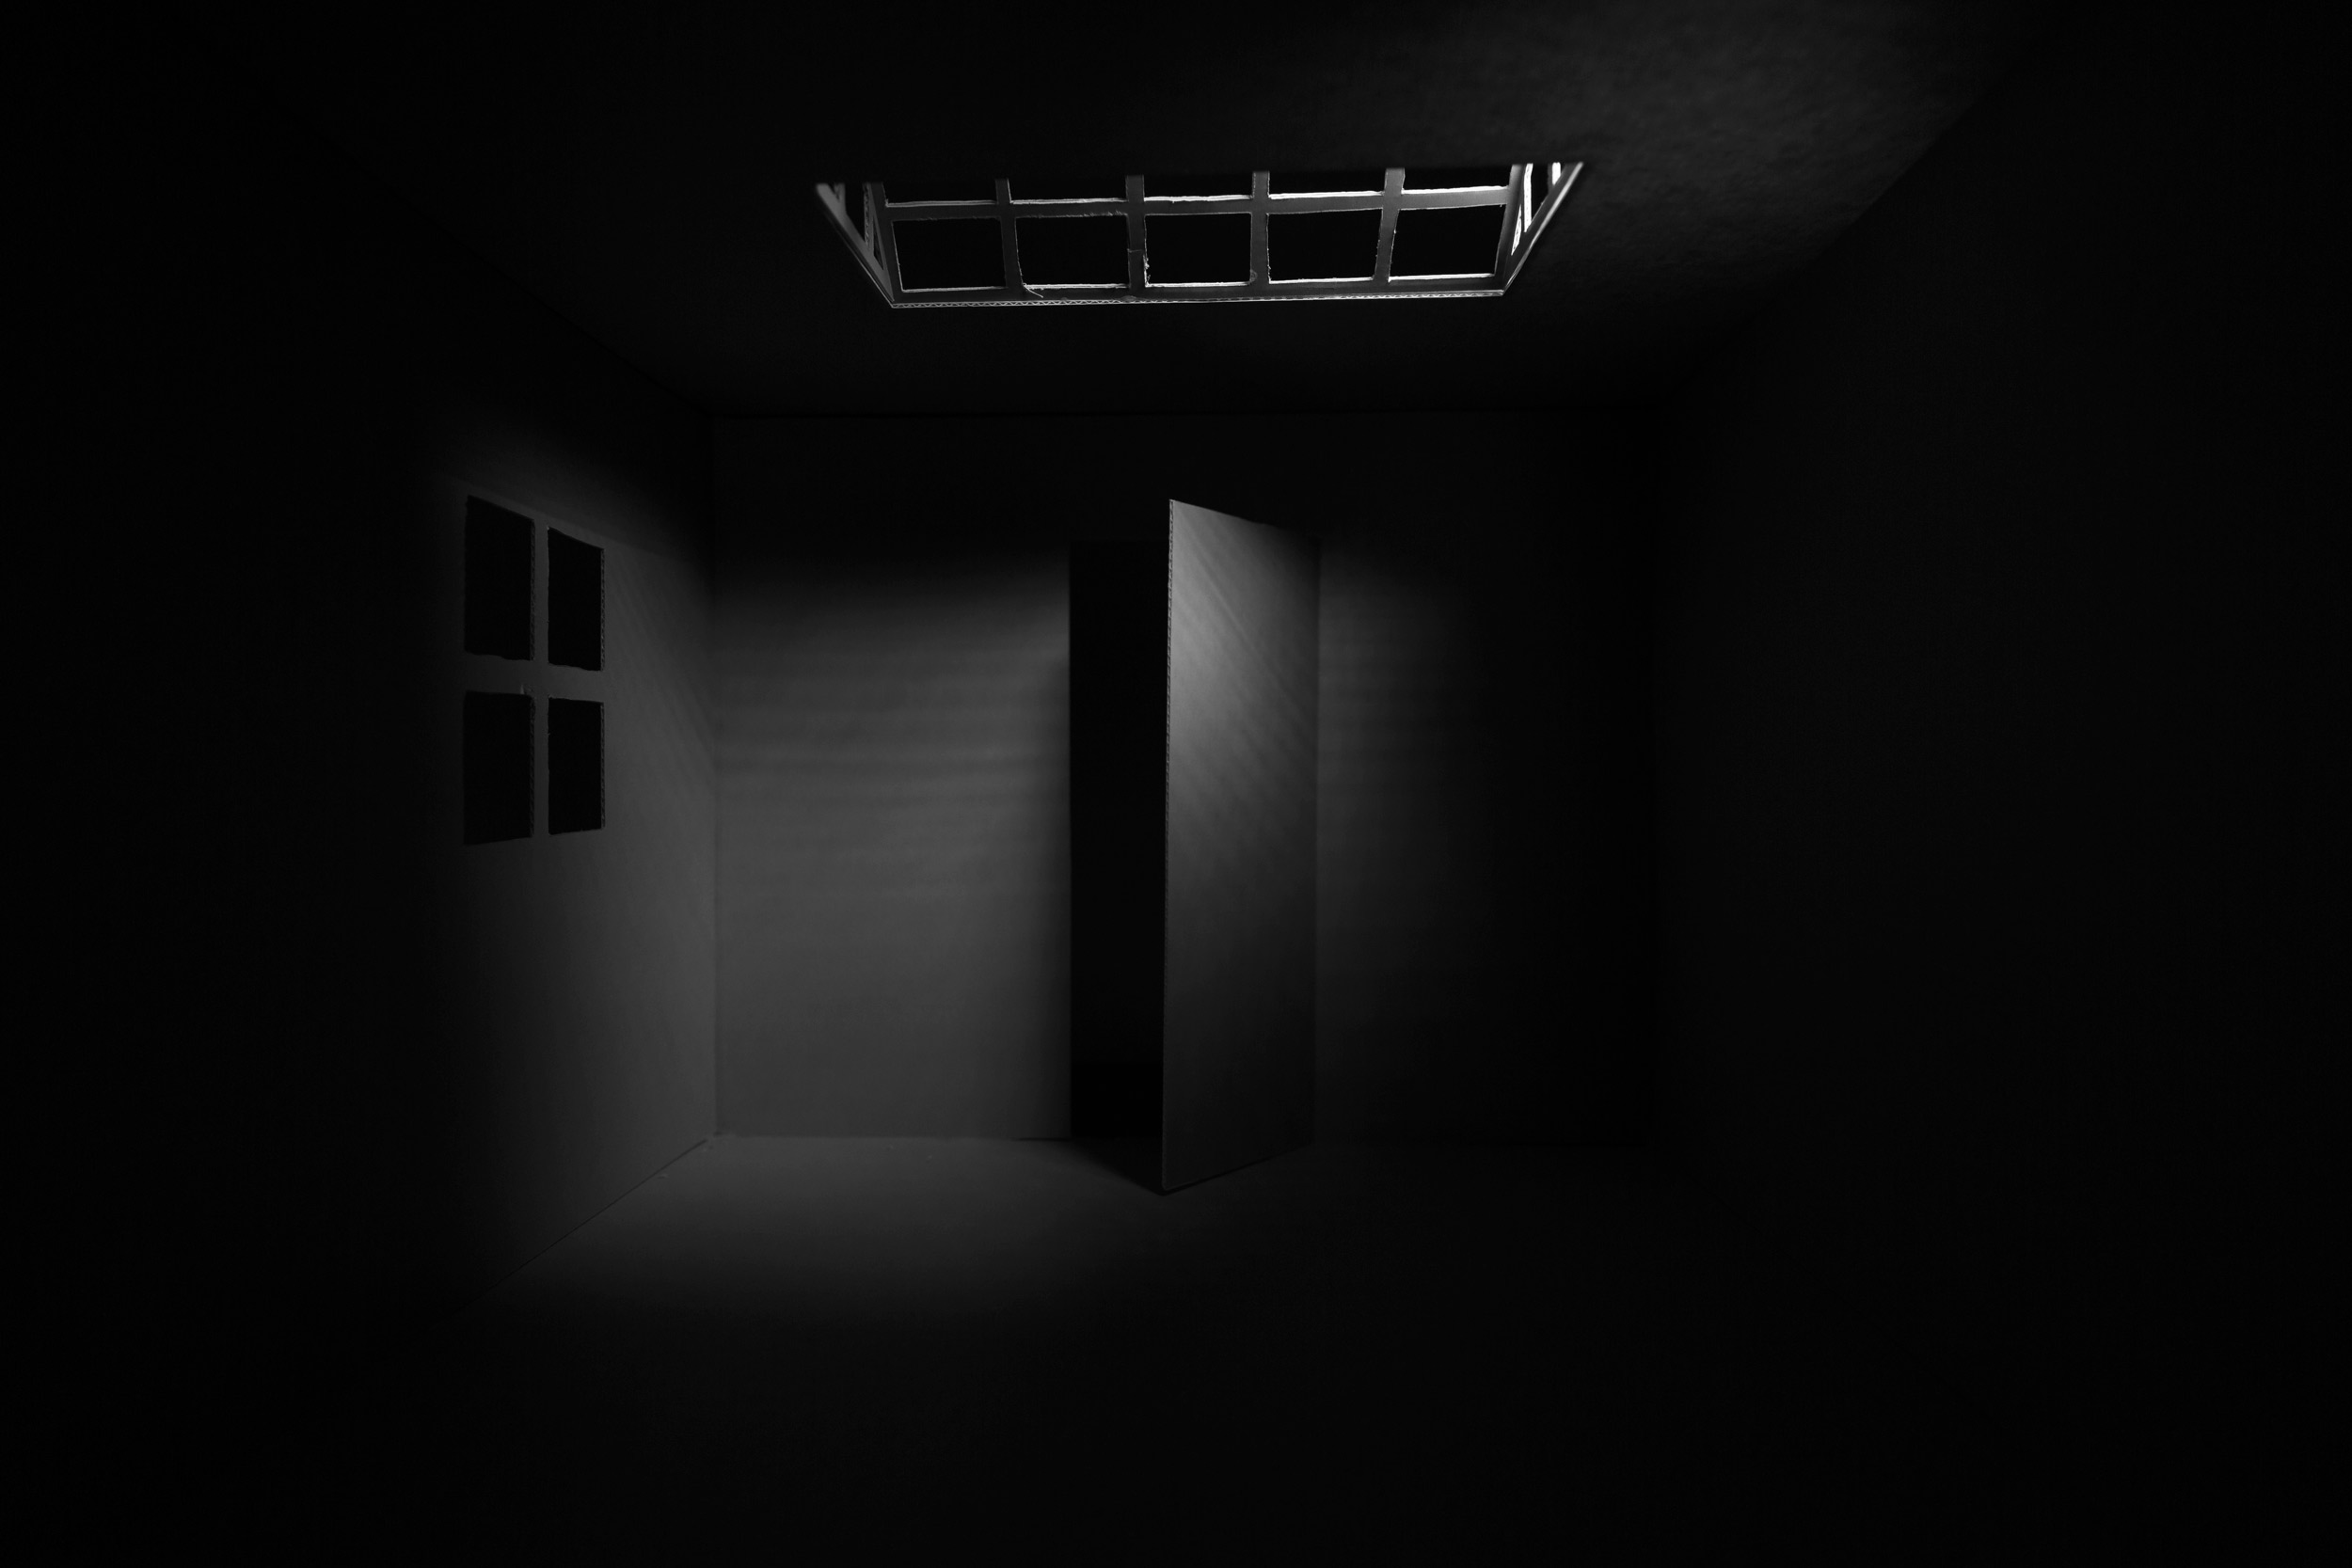 Raum und Licht (Dachfensterlicht bei offener Tür)